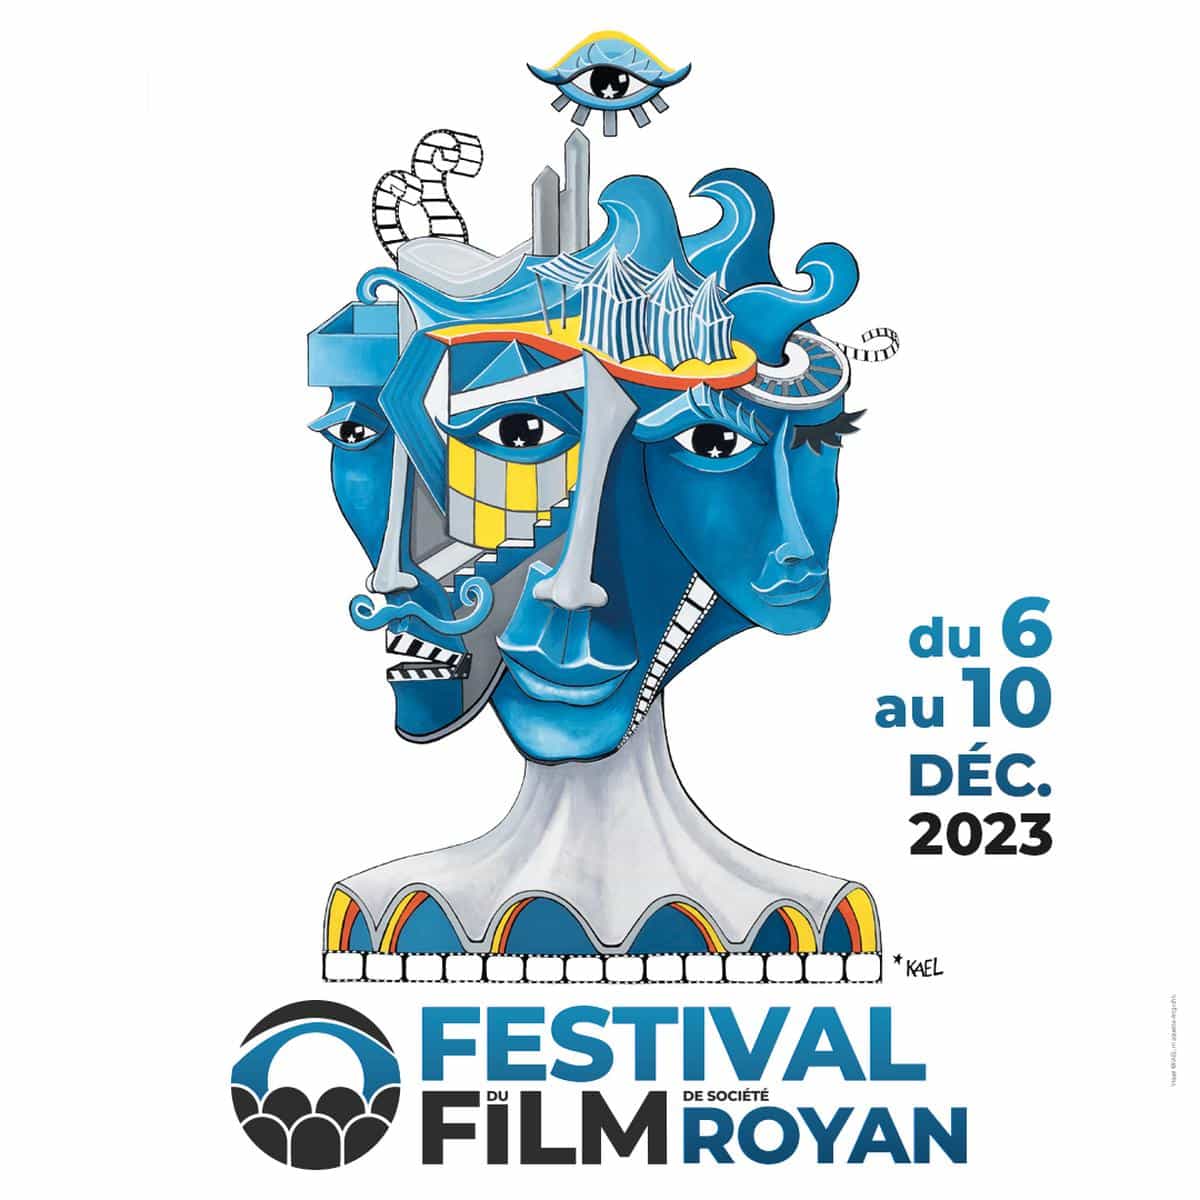 L’affiche de la troisième édition du Festival du film de société de Royan a été dévoilée ce lundi 2 octobre.